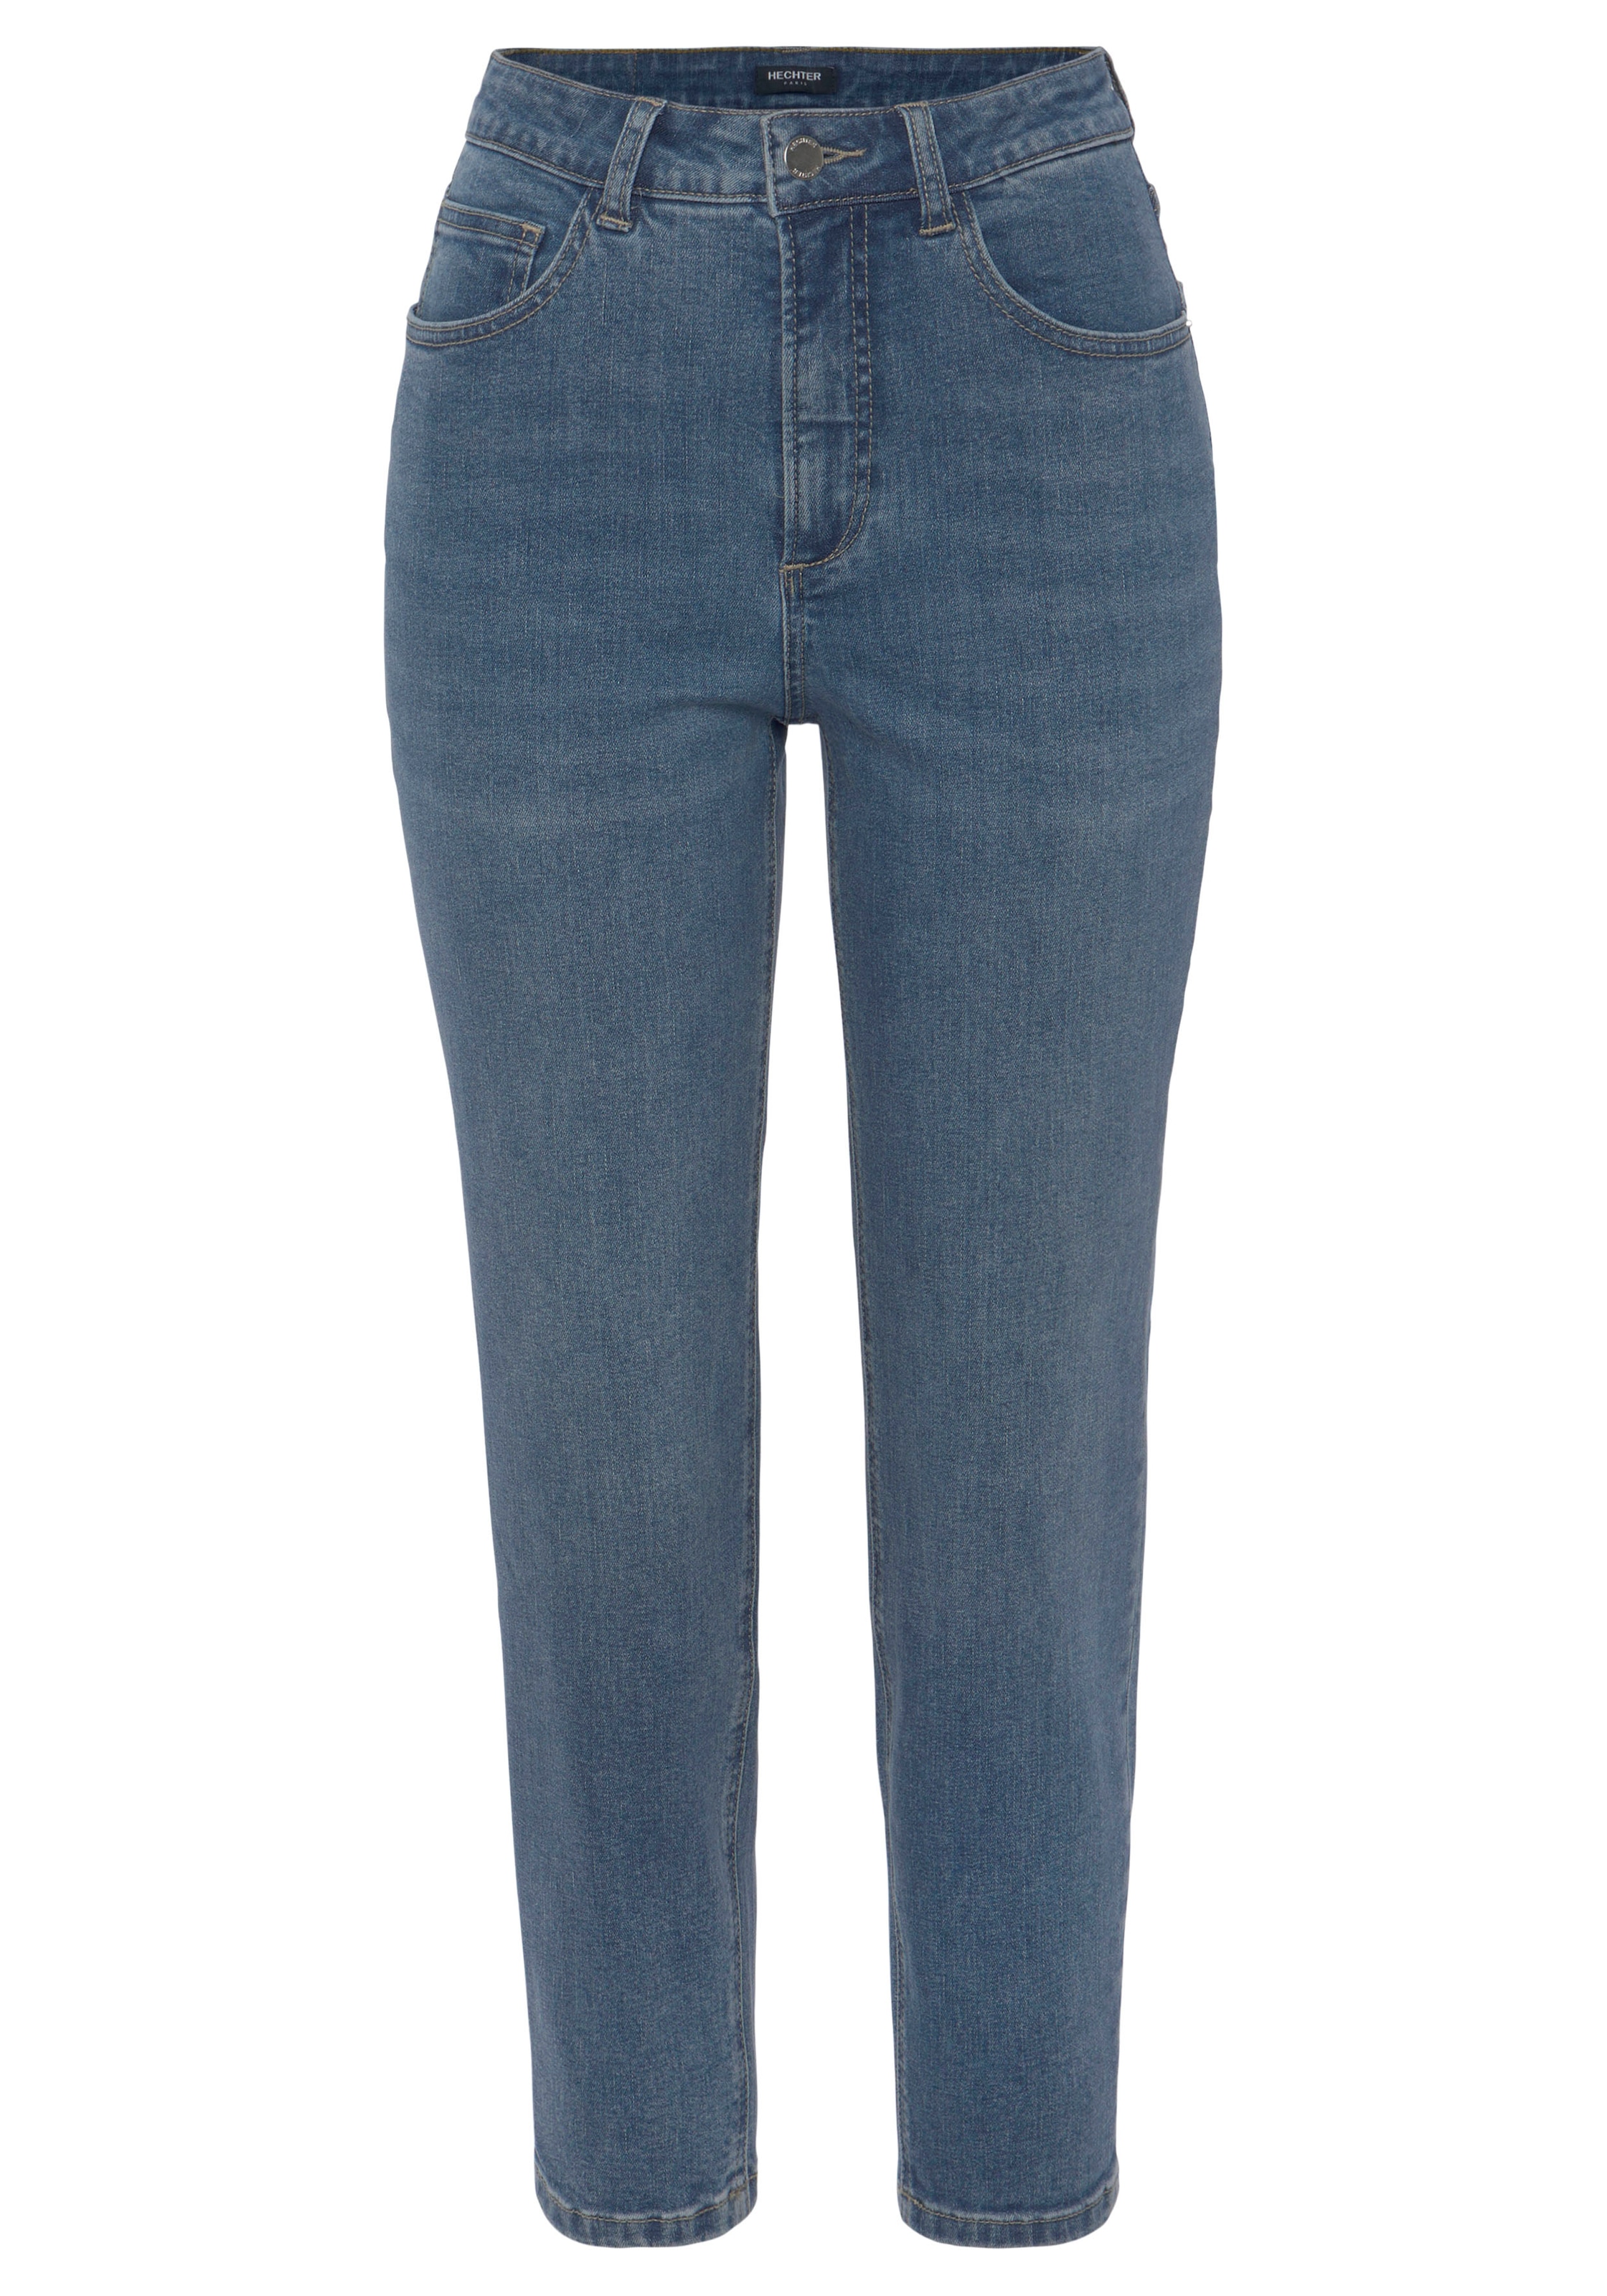 HECHTER PARIS Mom-Jeans, mit dezentem Used-Look